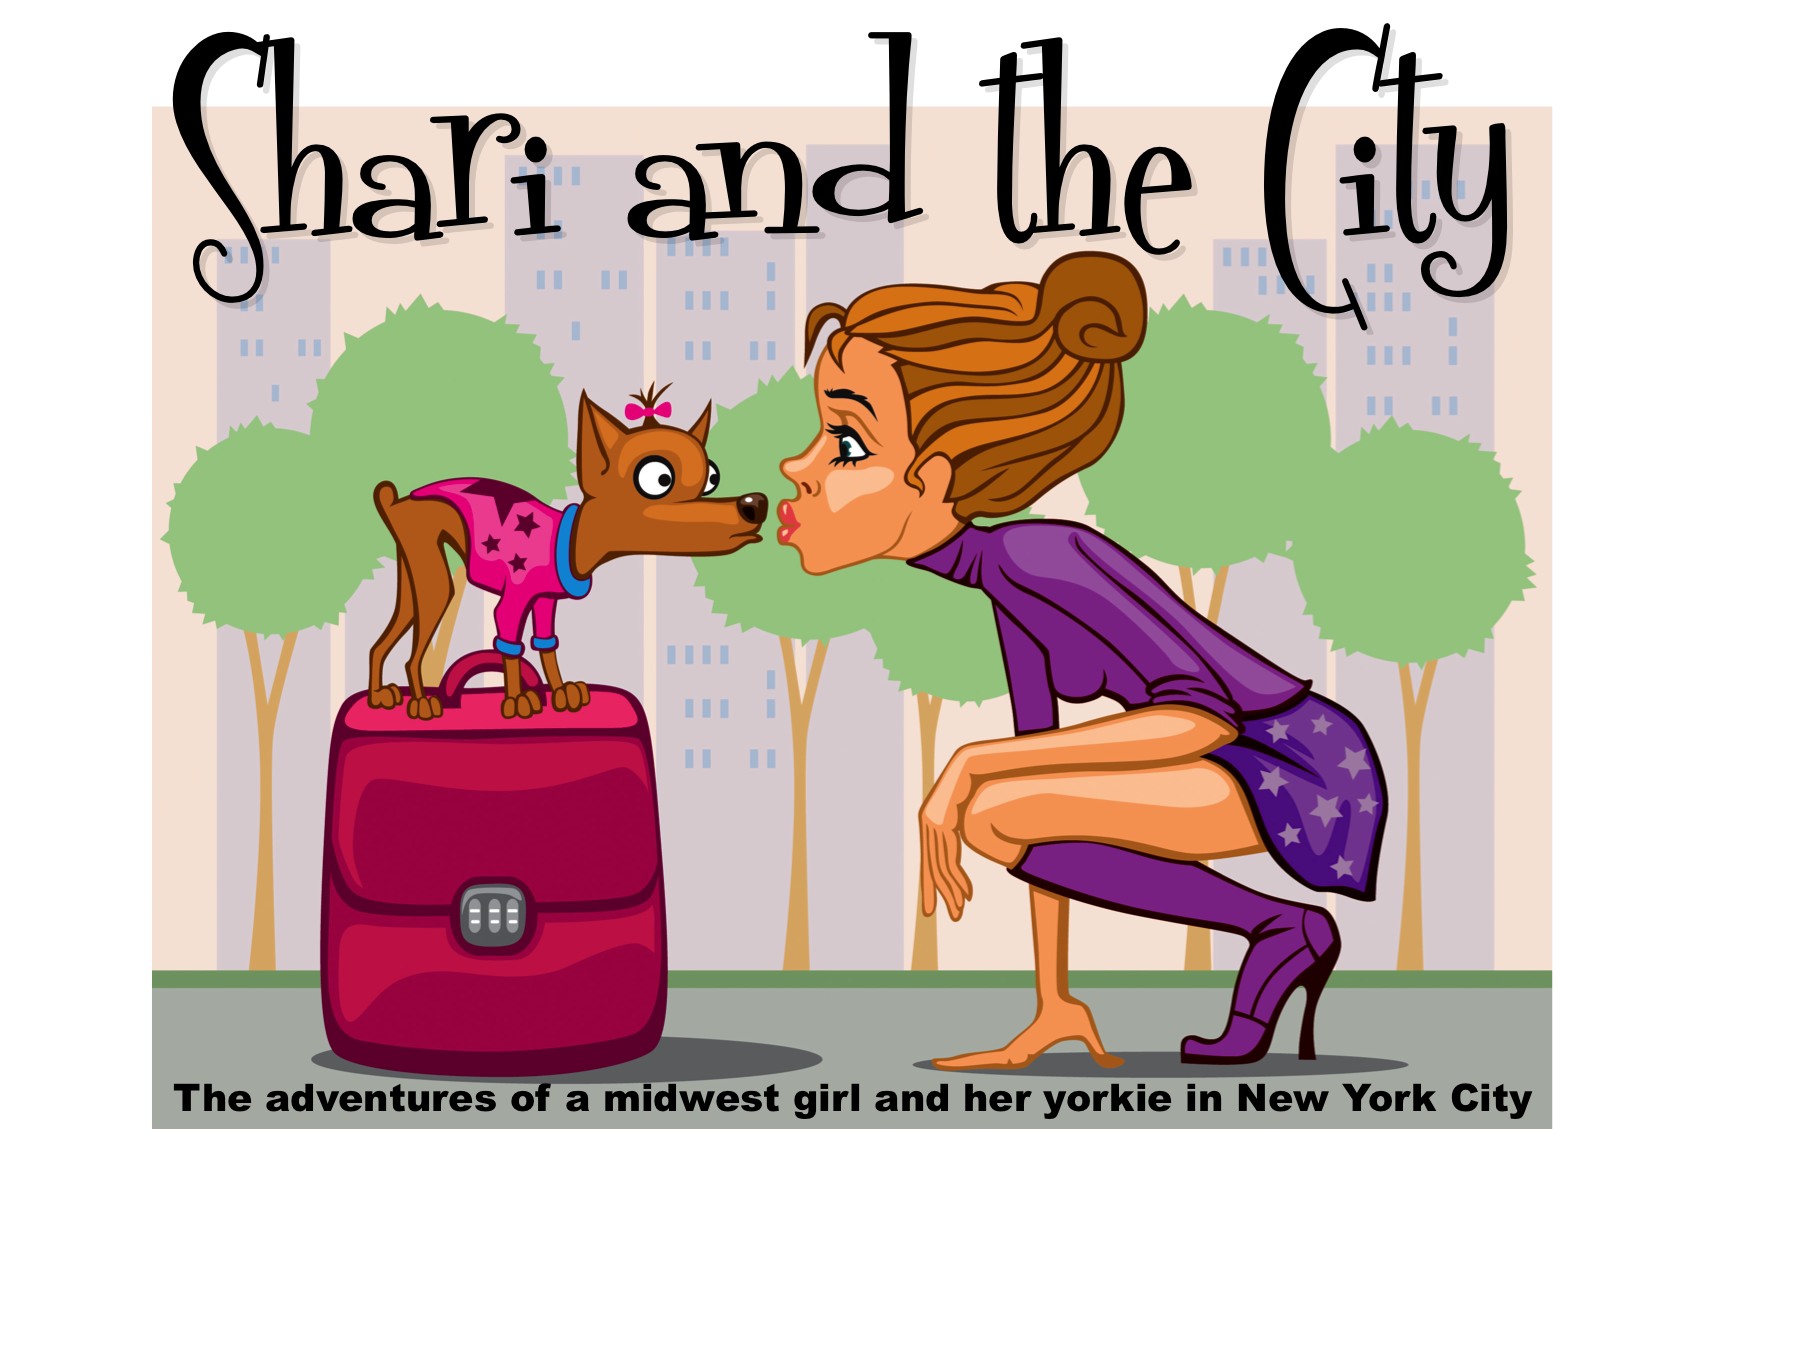 Shari and the City